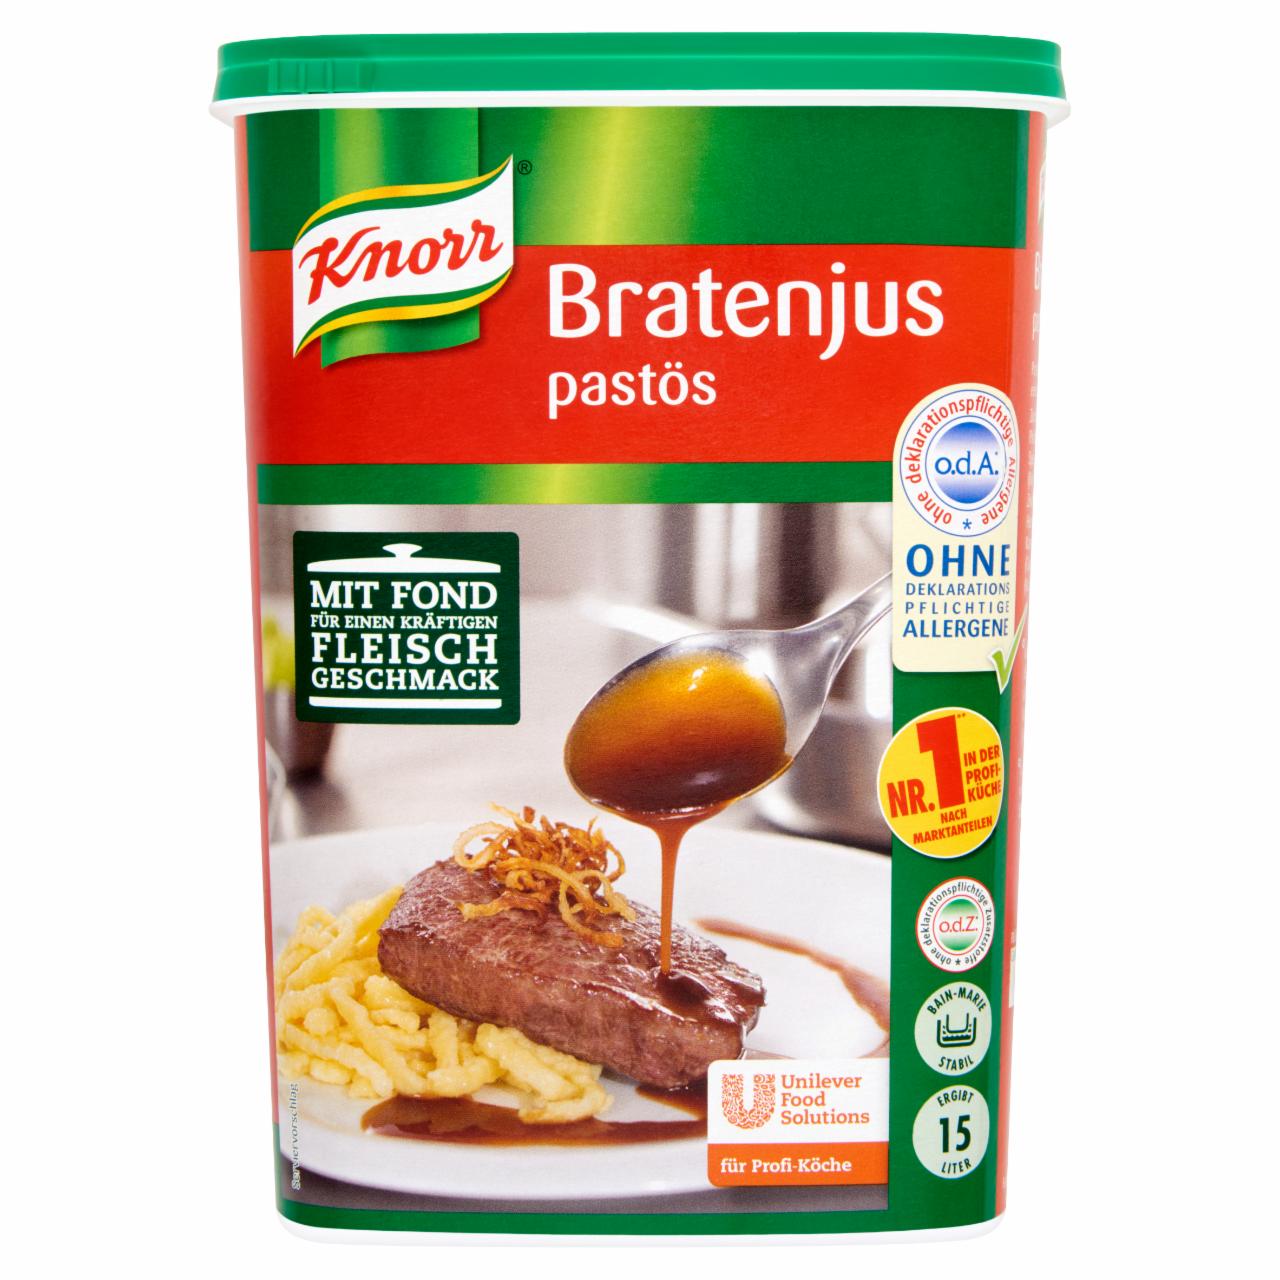 Képek - Knorr sülthússzaft alap paszta 1,4 kg